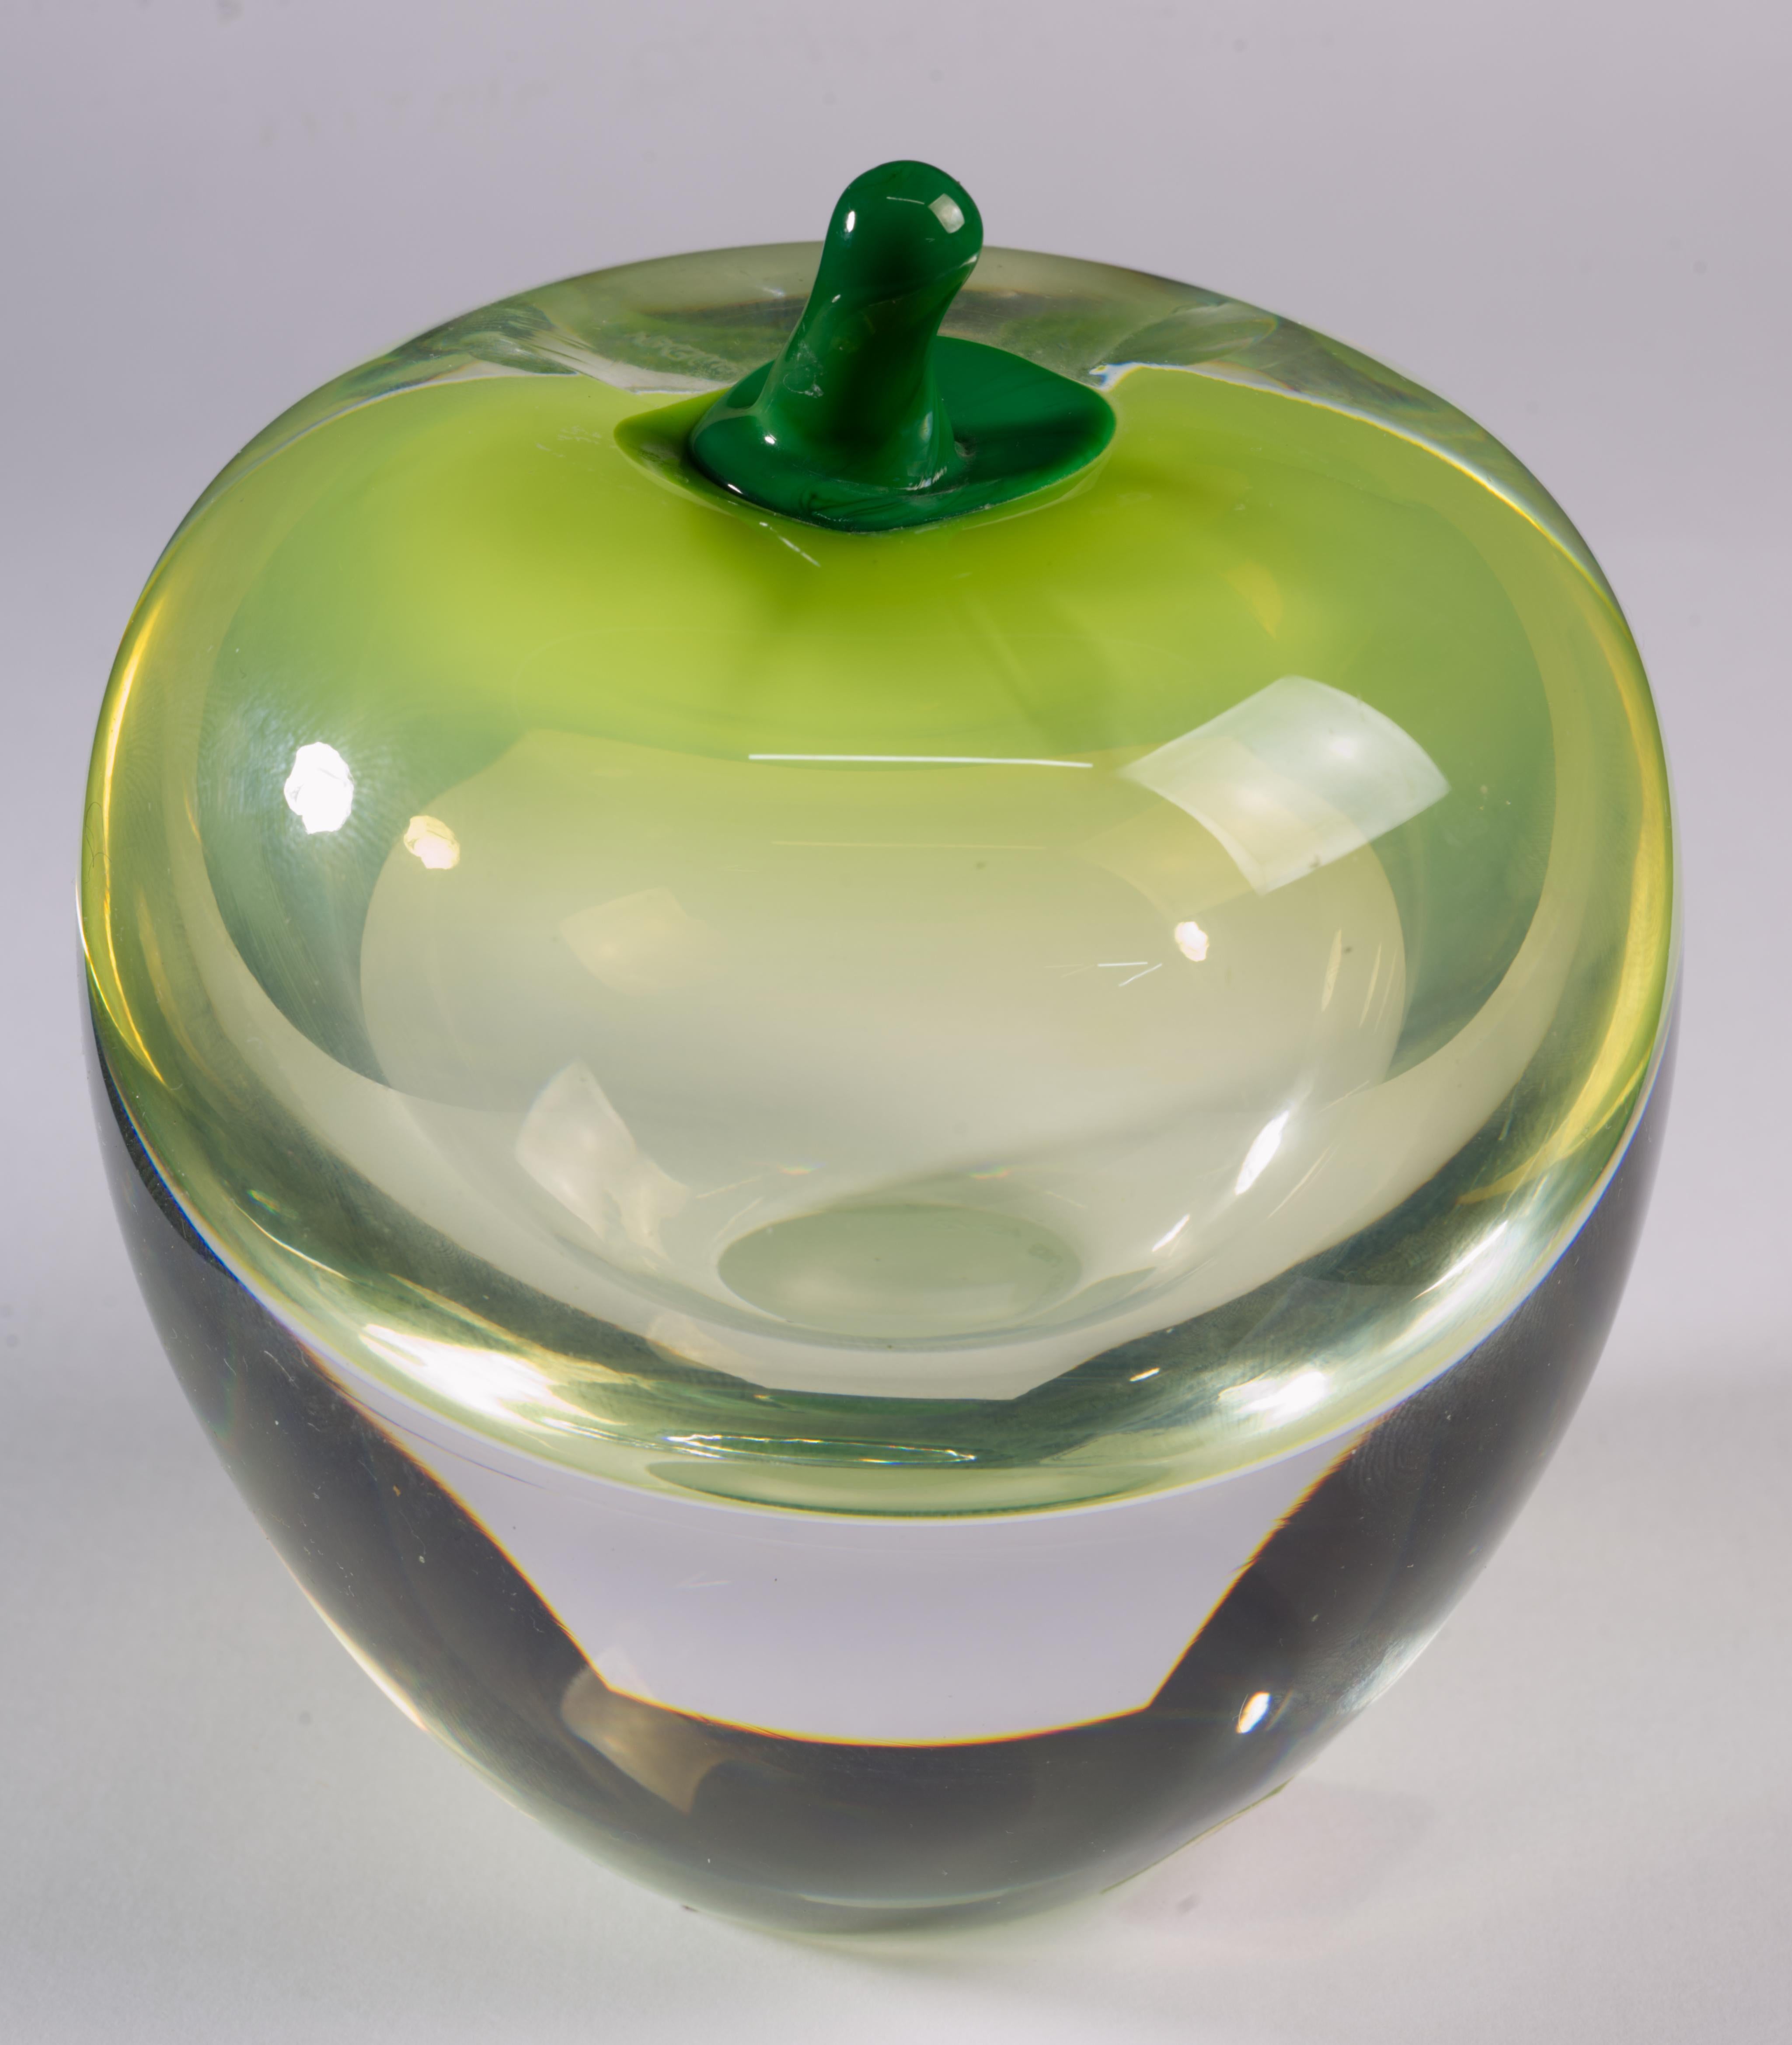  Rare sculpture de pomme en verre d'art vintage ou presse-papier du Studio Åhus a été réalisée à la main en Suède en 1988 selon la technique du sommerso, originaire de Murano, en Italie. Le cœur en verre fumé vert clair avec un dégradé de couleurs